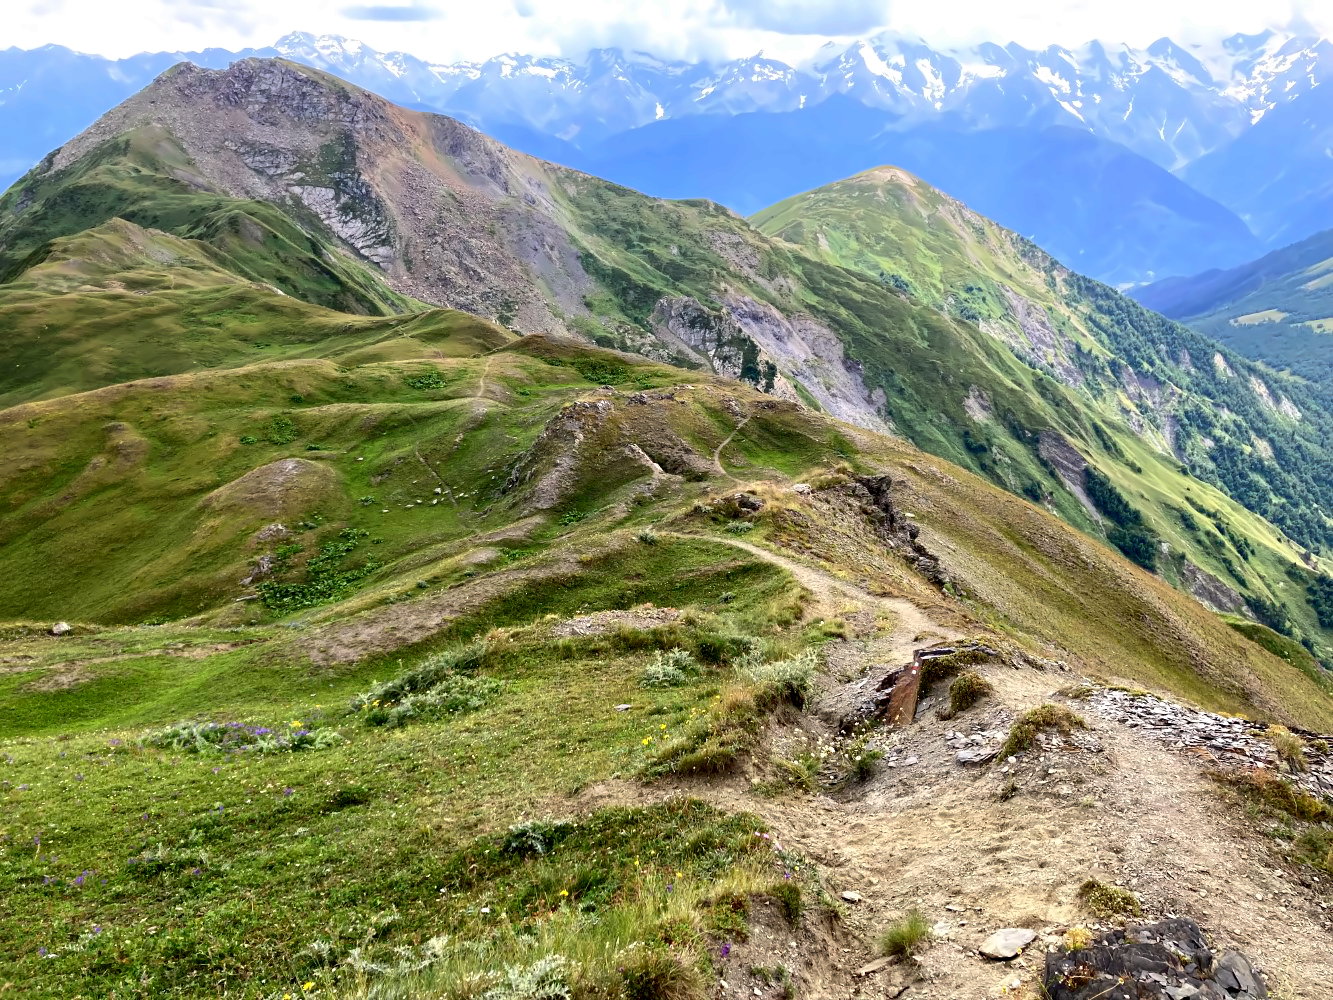 Wanderweg auf dem Transcaucasian Trail im Gebirge von Georgien.